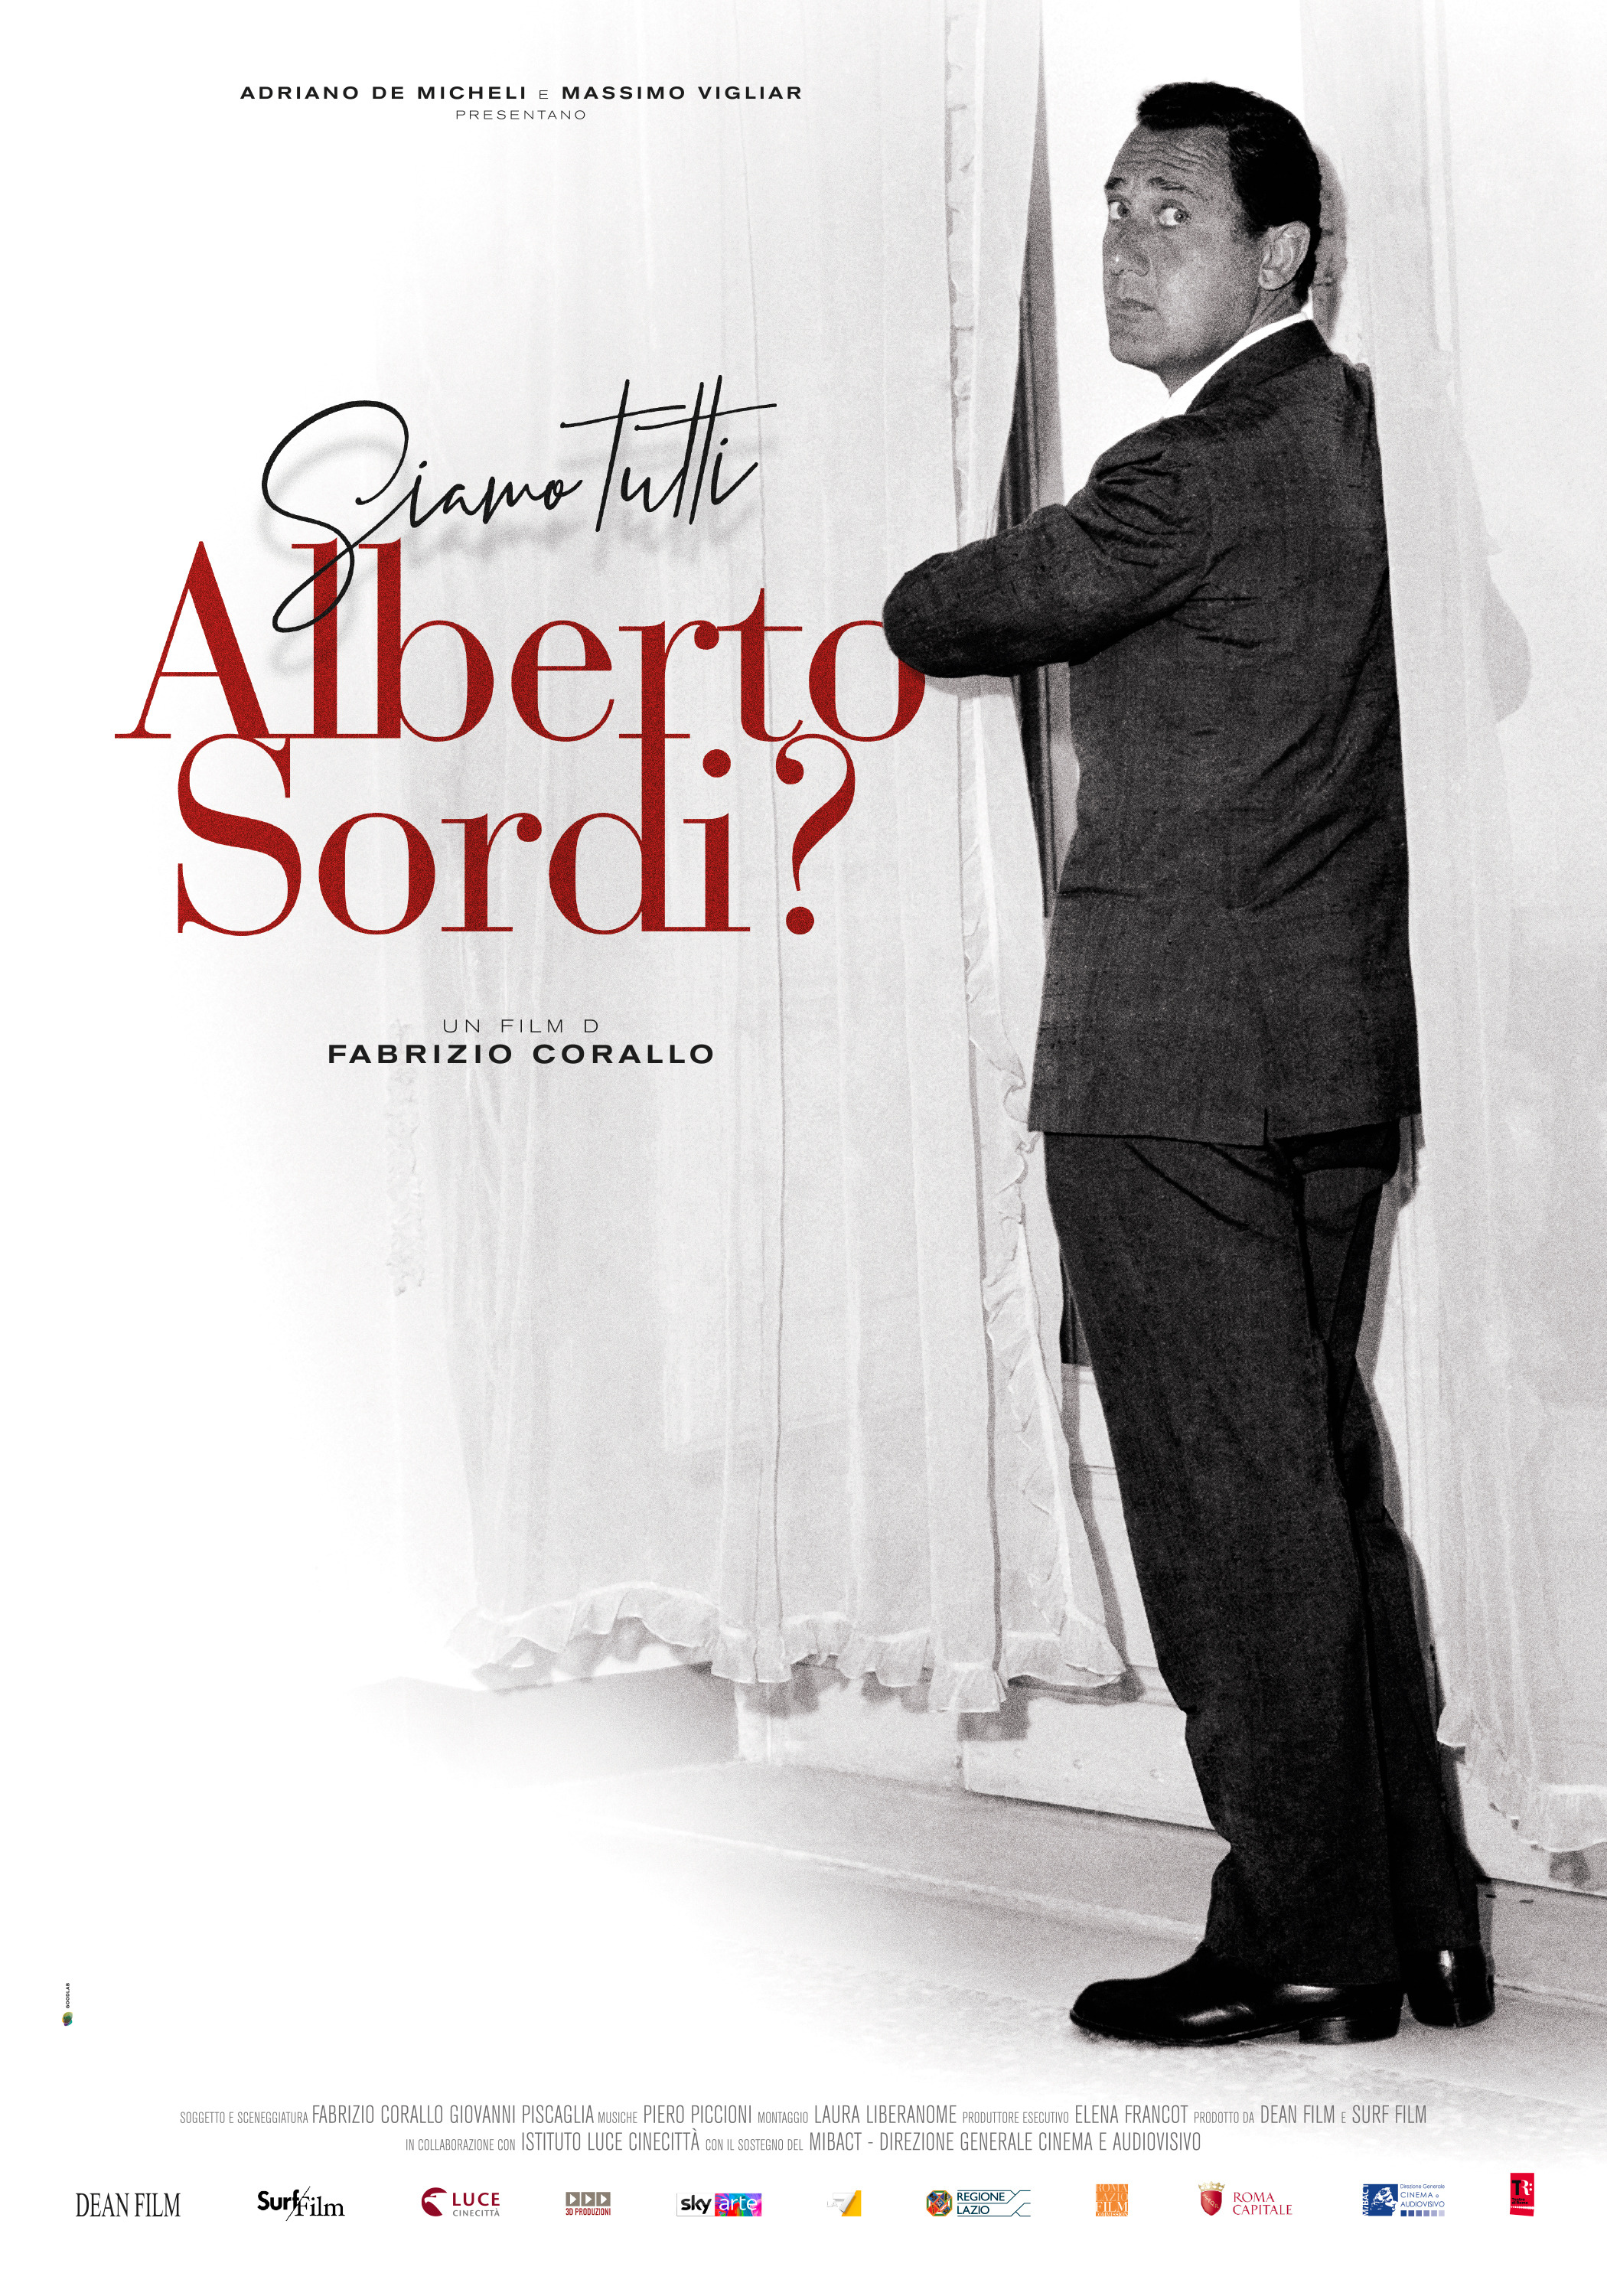 Mega Sized Movie Poster Image for Siamo tutti Alberto Sordi? 